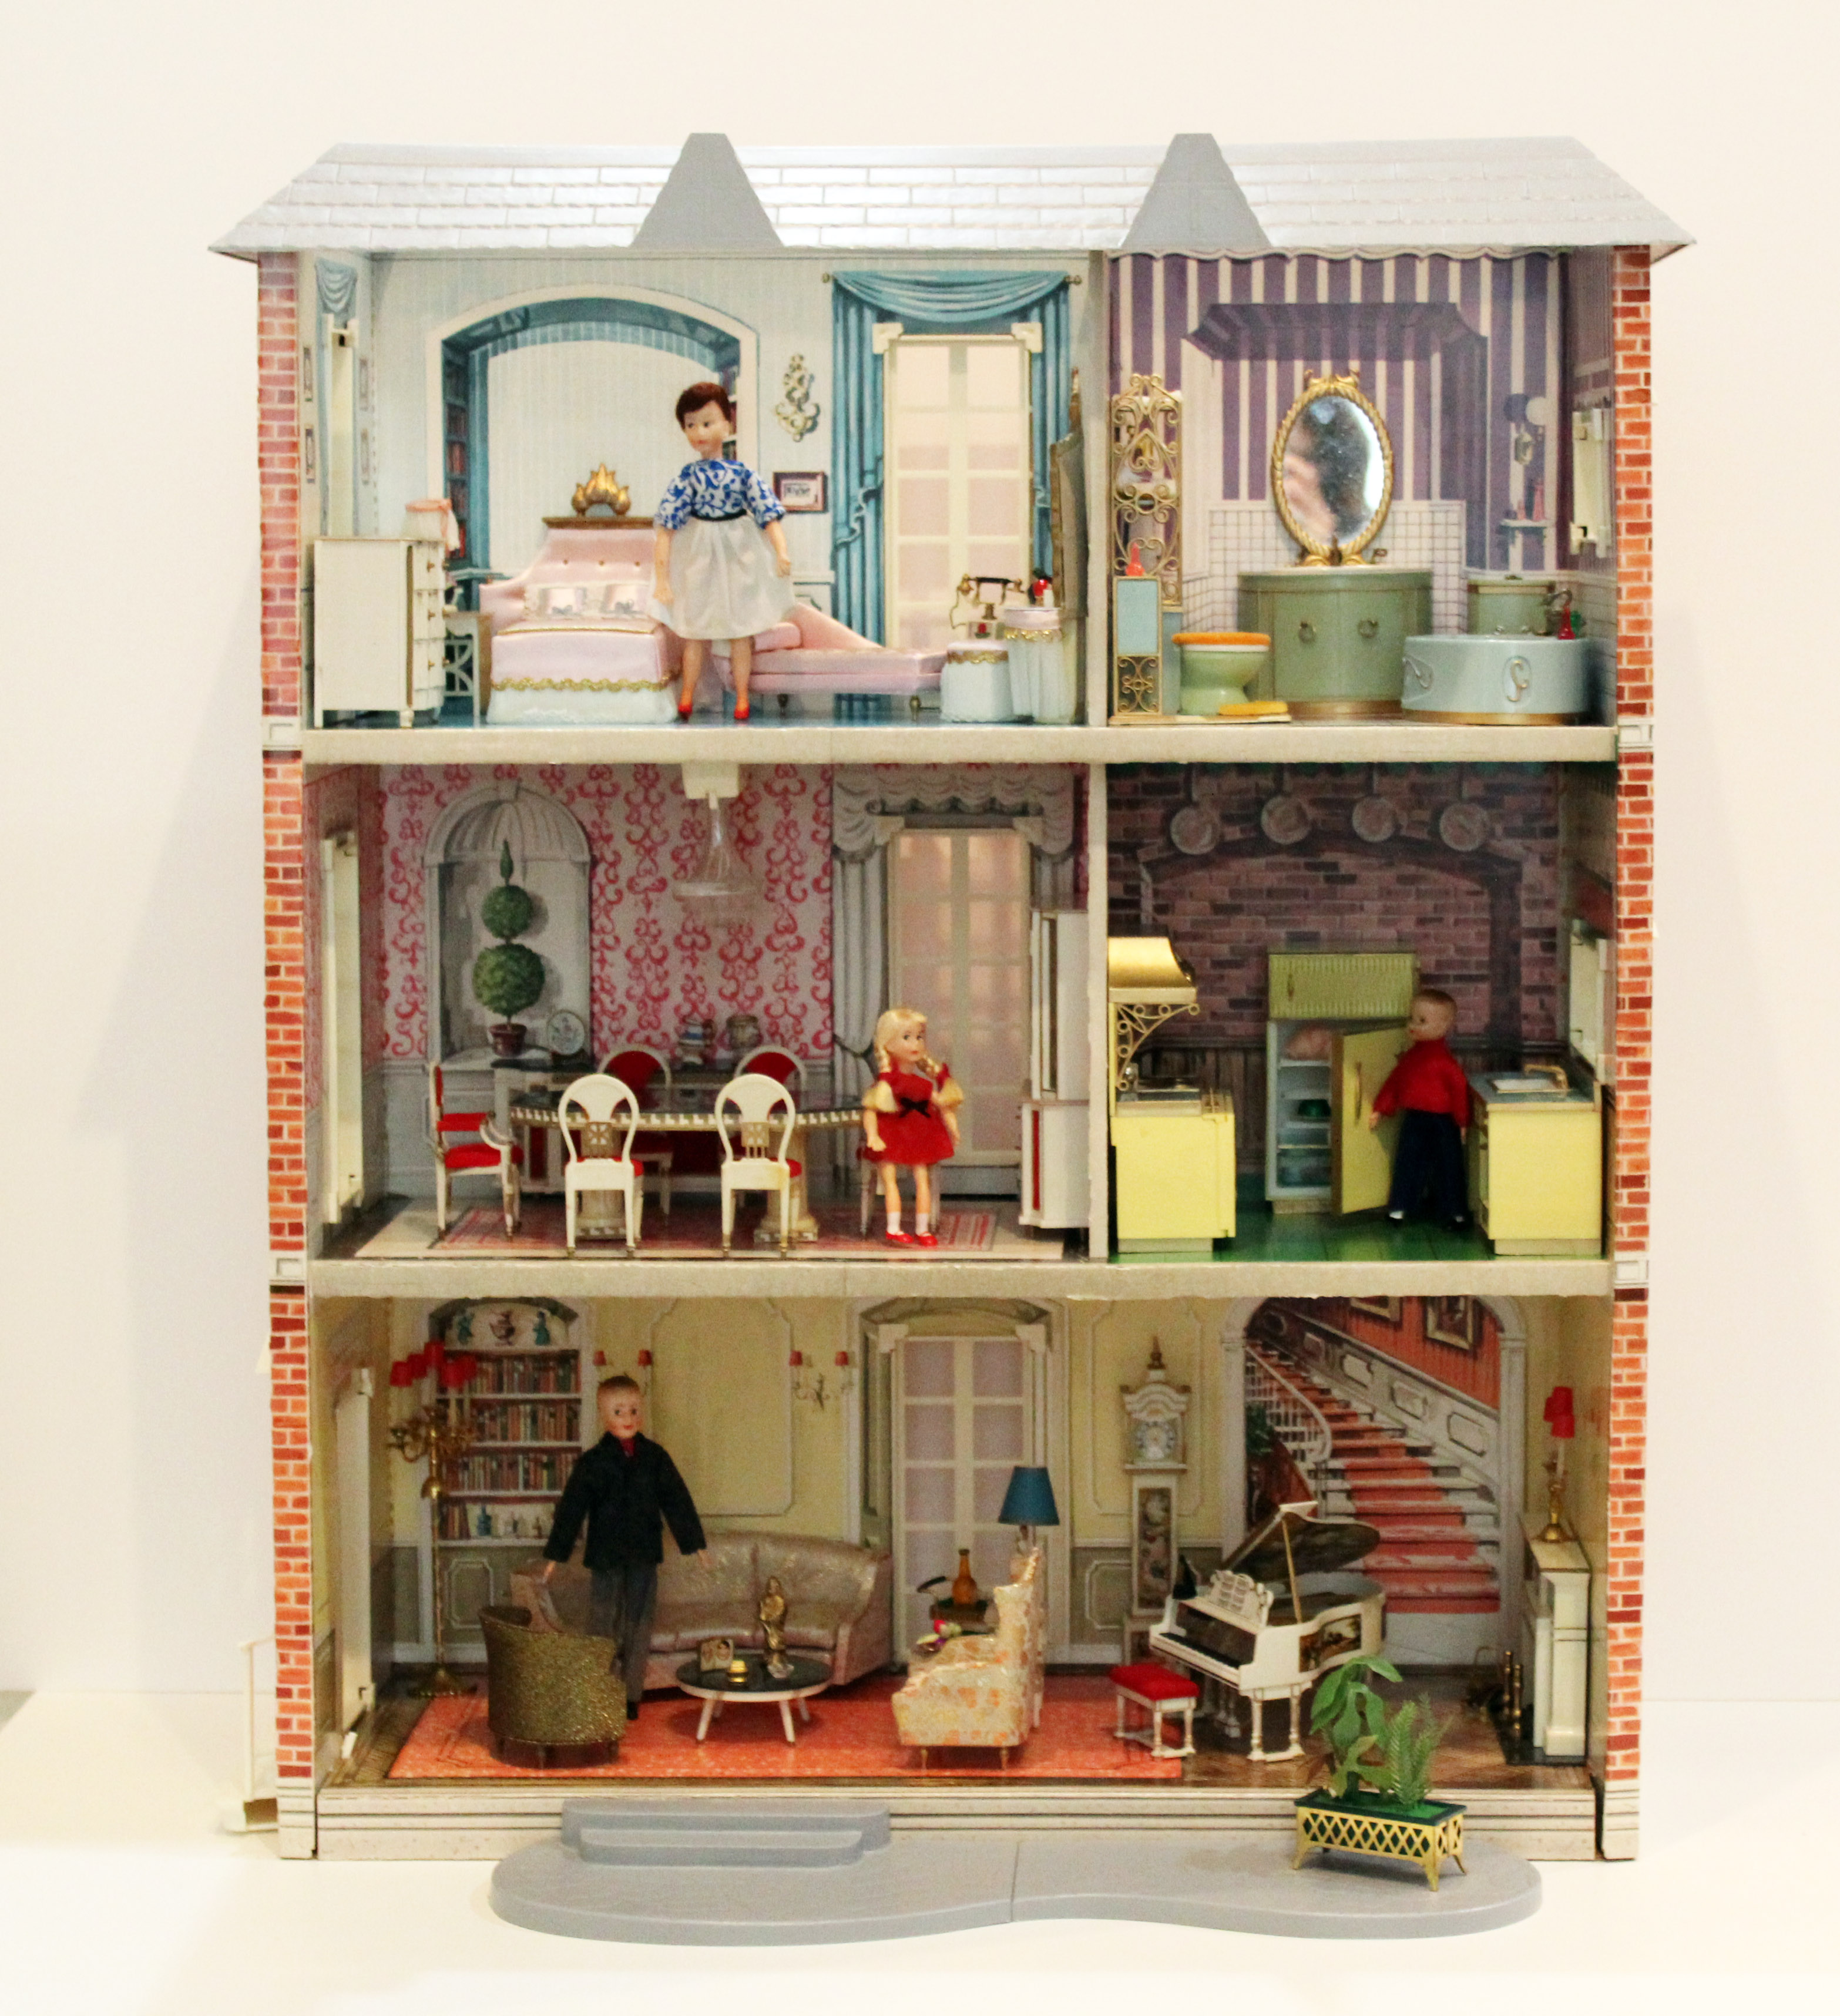 dollhouses for little girls